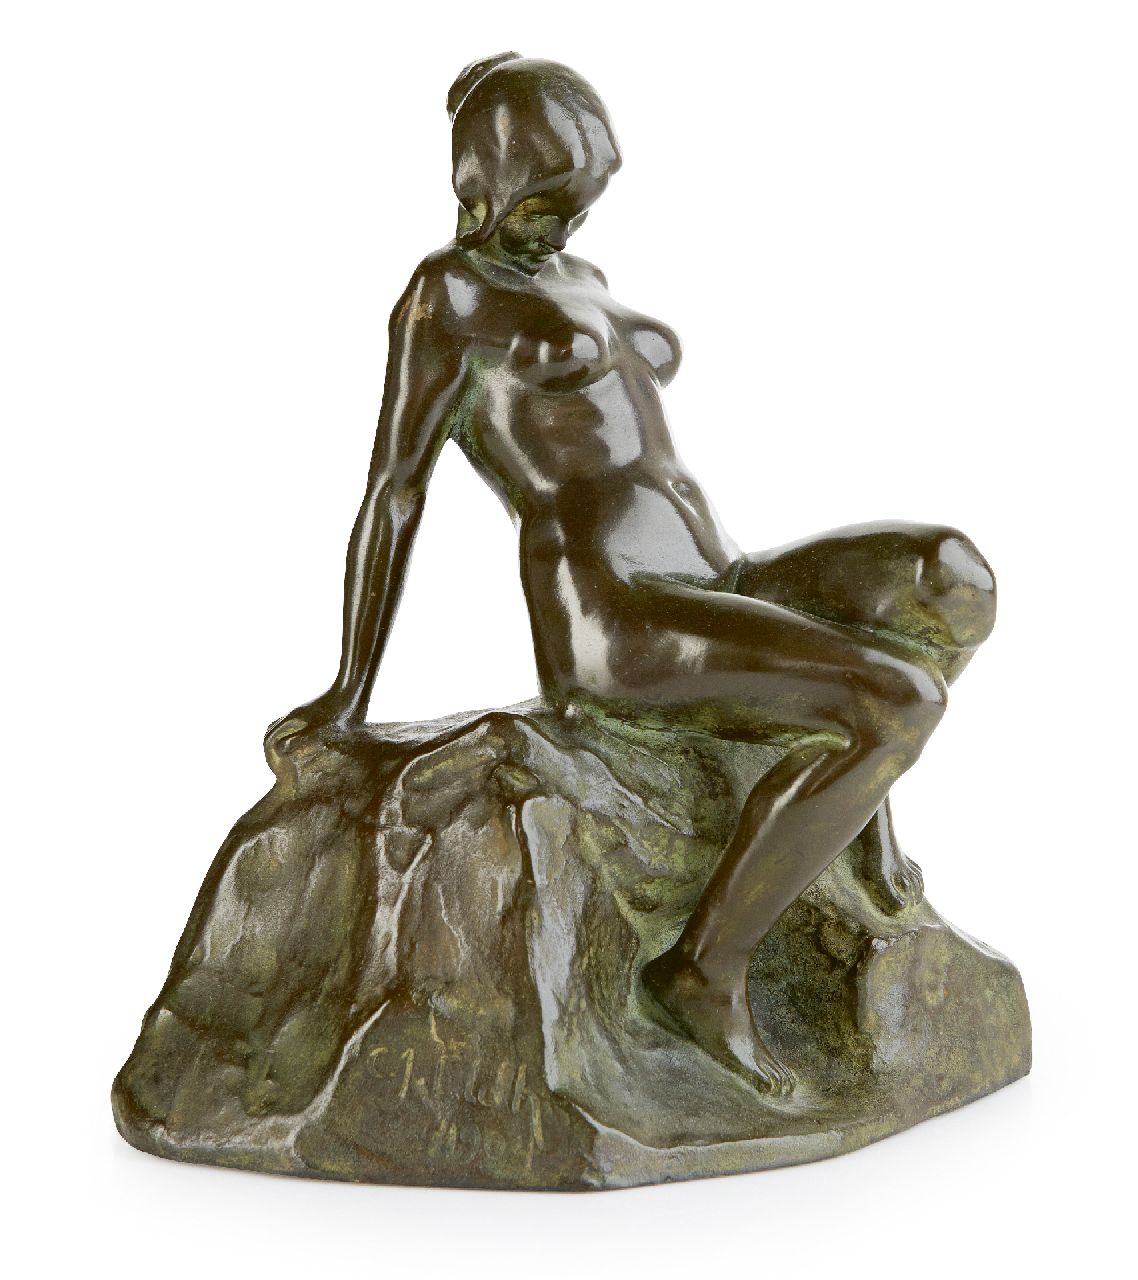 Eldh C.J.  | Carl Johan Eldh | Skulpturen und Objekte zum Verkauf angeboten | Sitzender weiblicher Akt, Bronze 25,0 x 22,5 cm, Unterzeichnet auf der Basis und datiert 1904